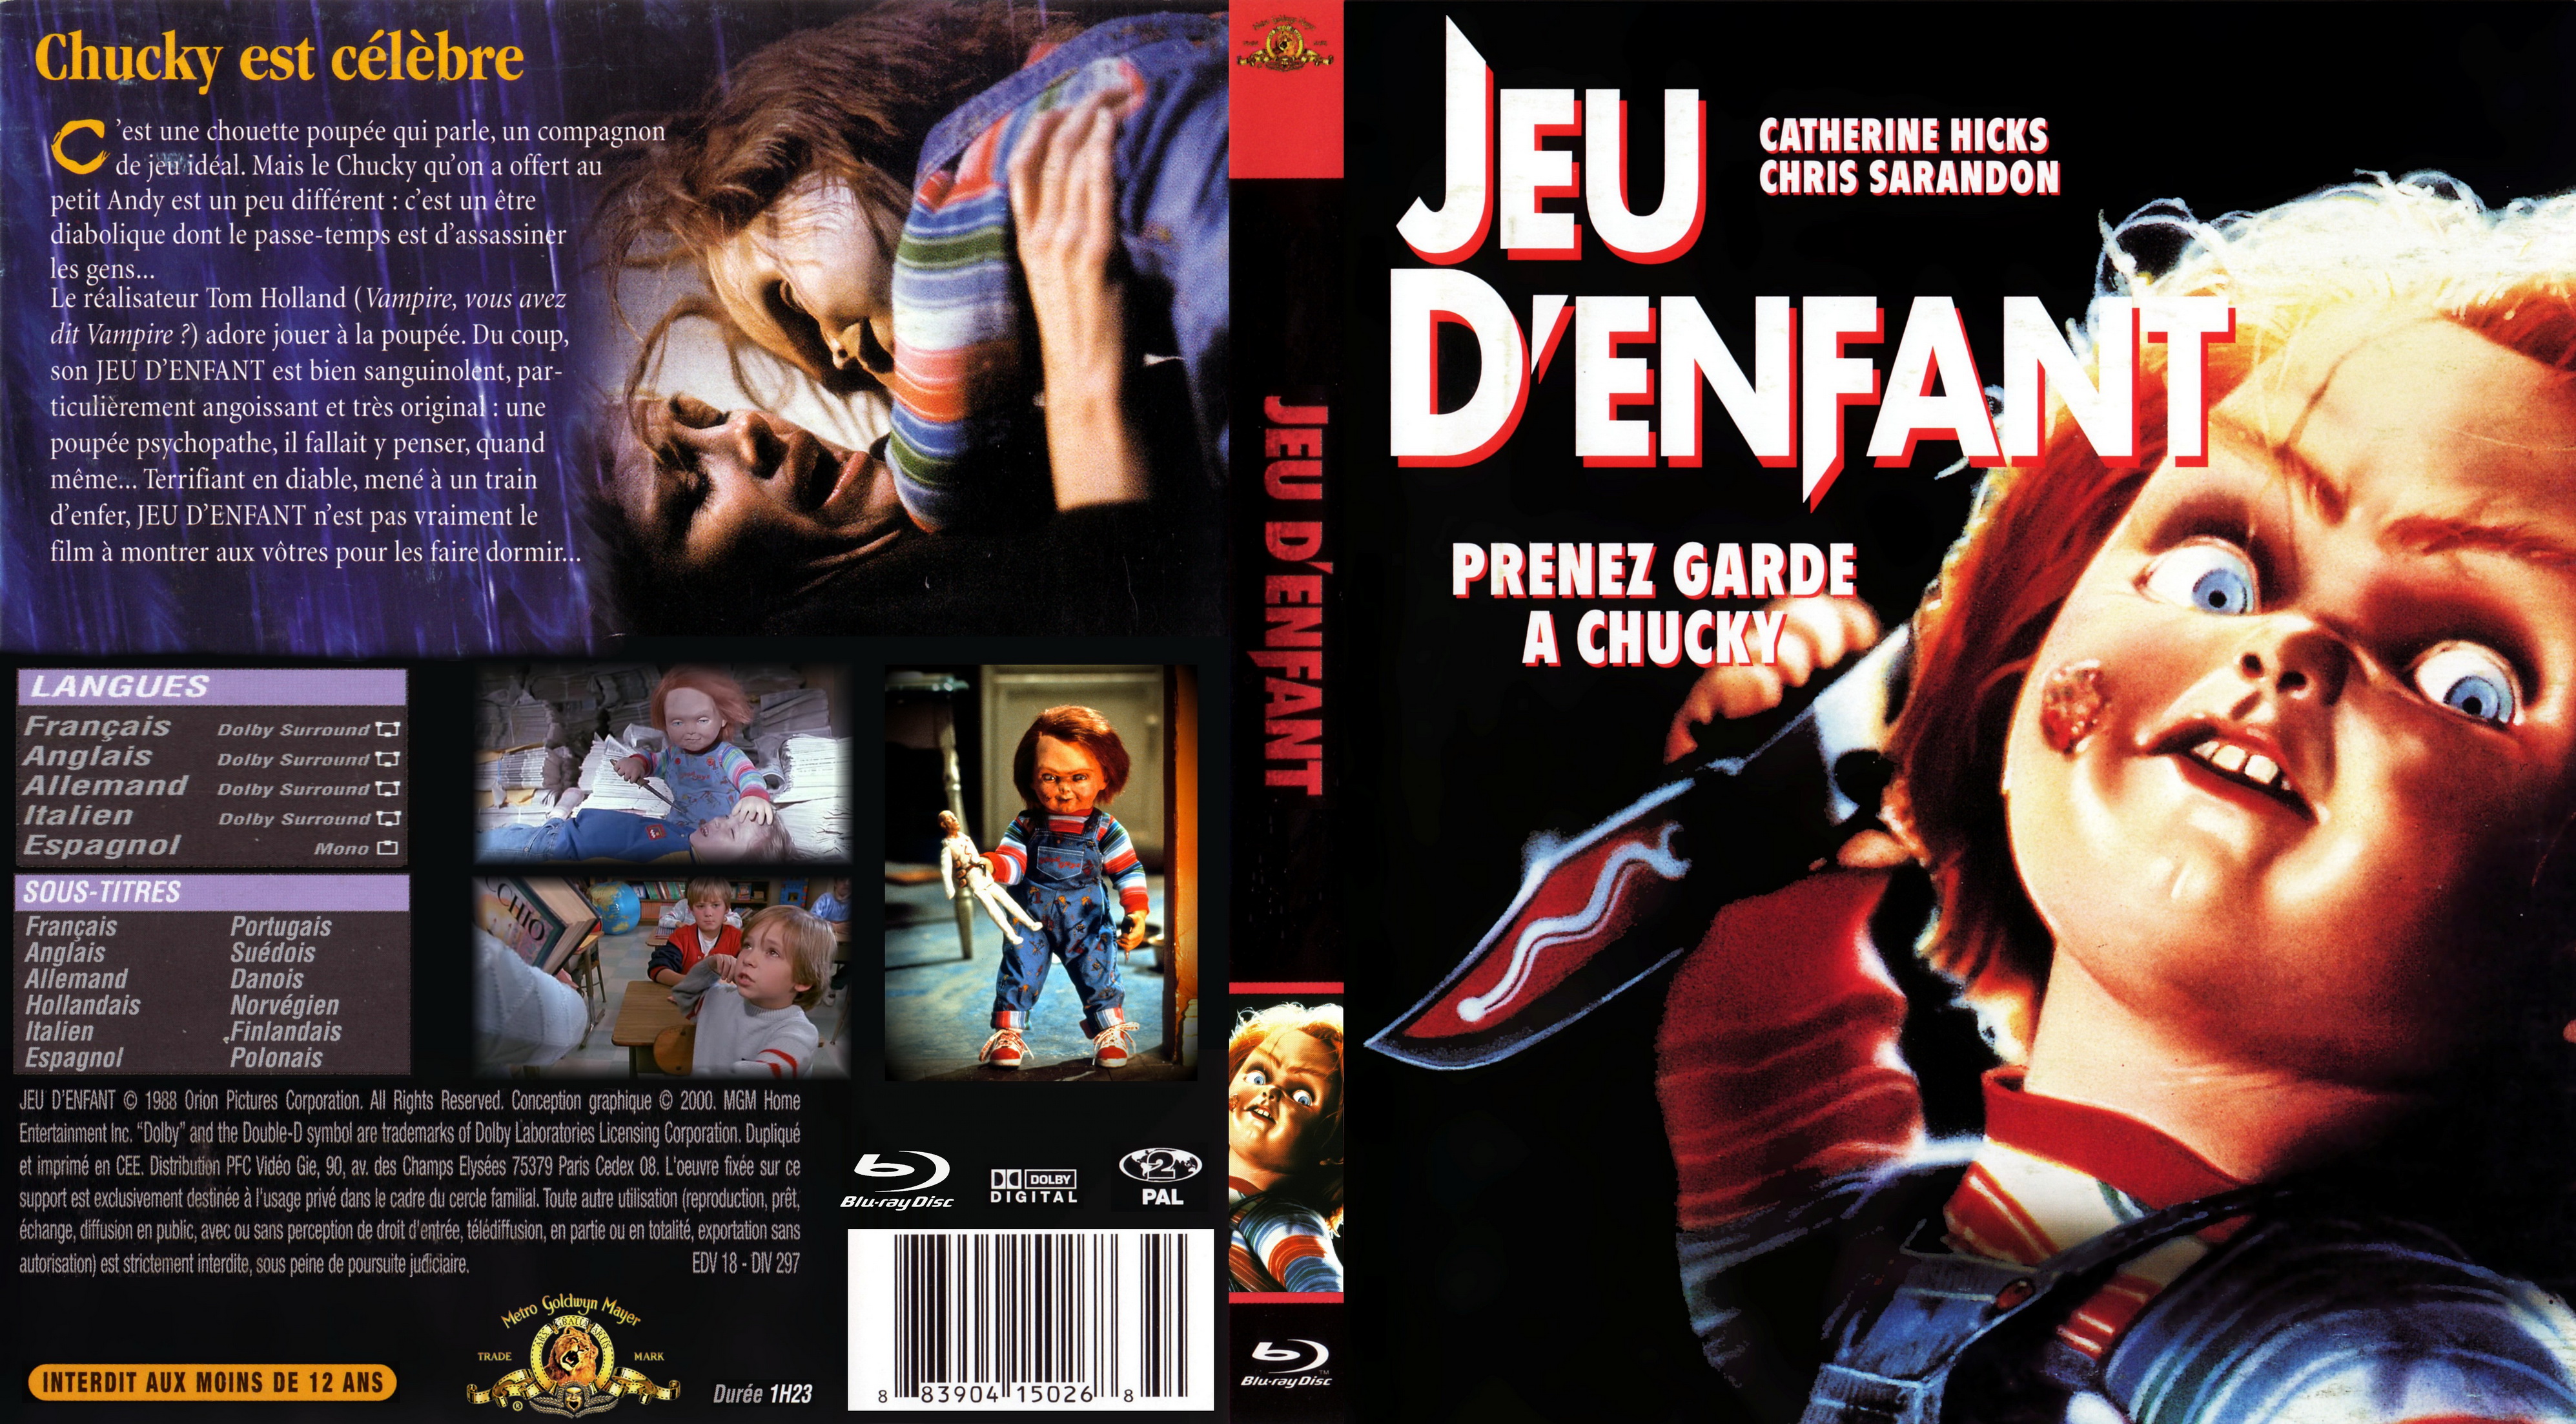 Jaquette DVD Chucky Jeu d